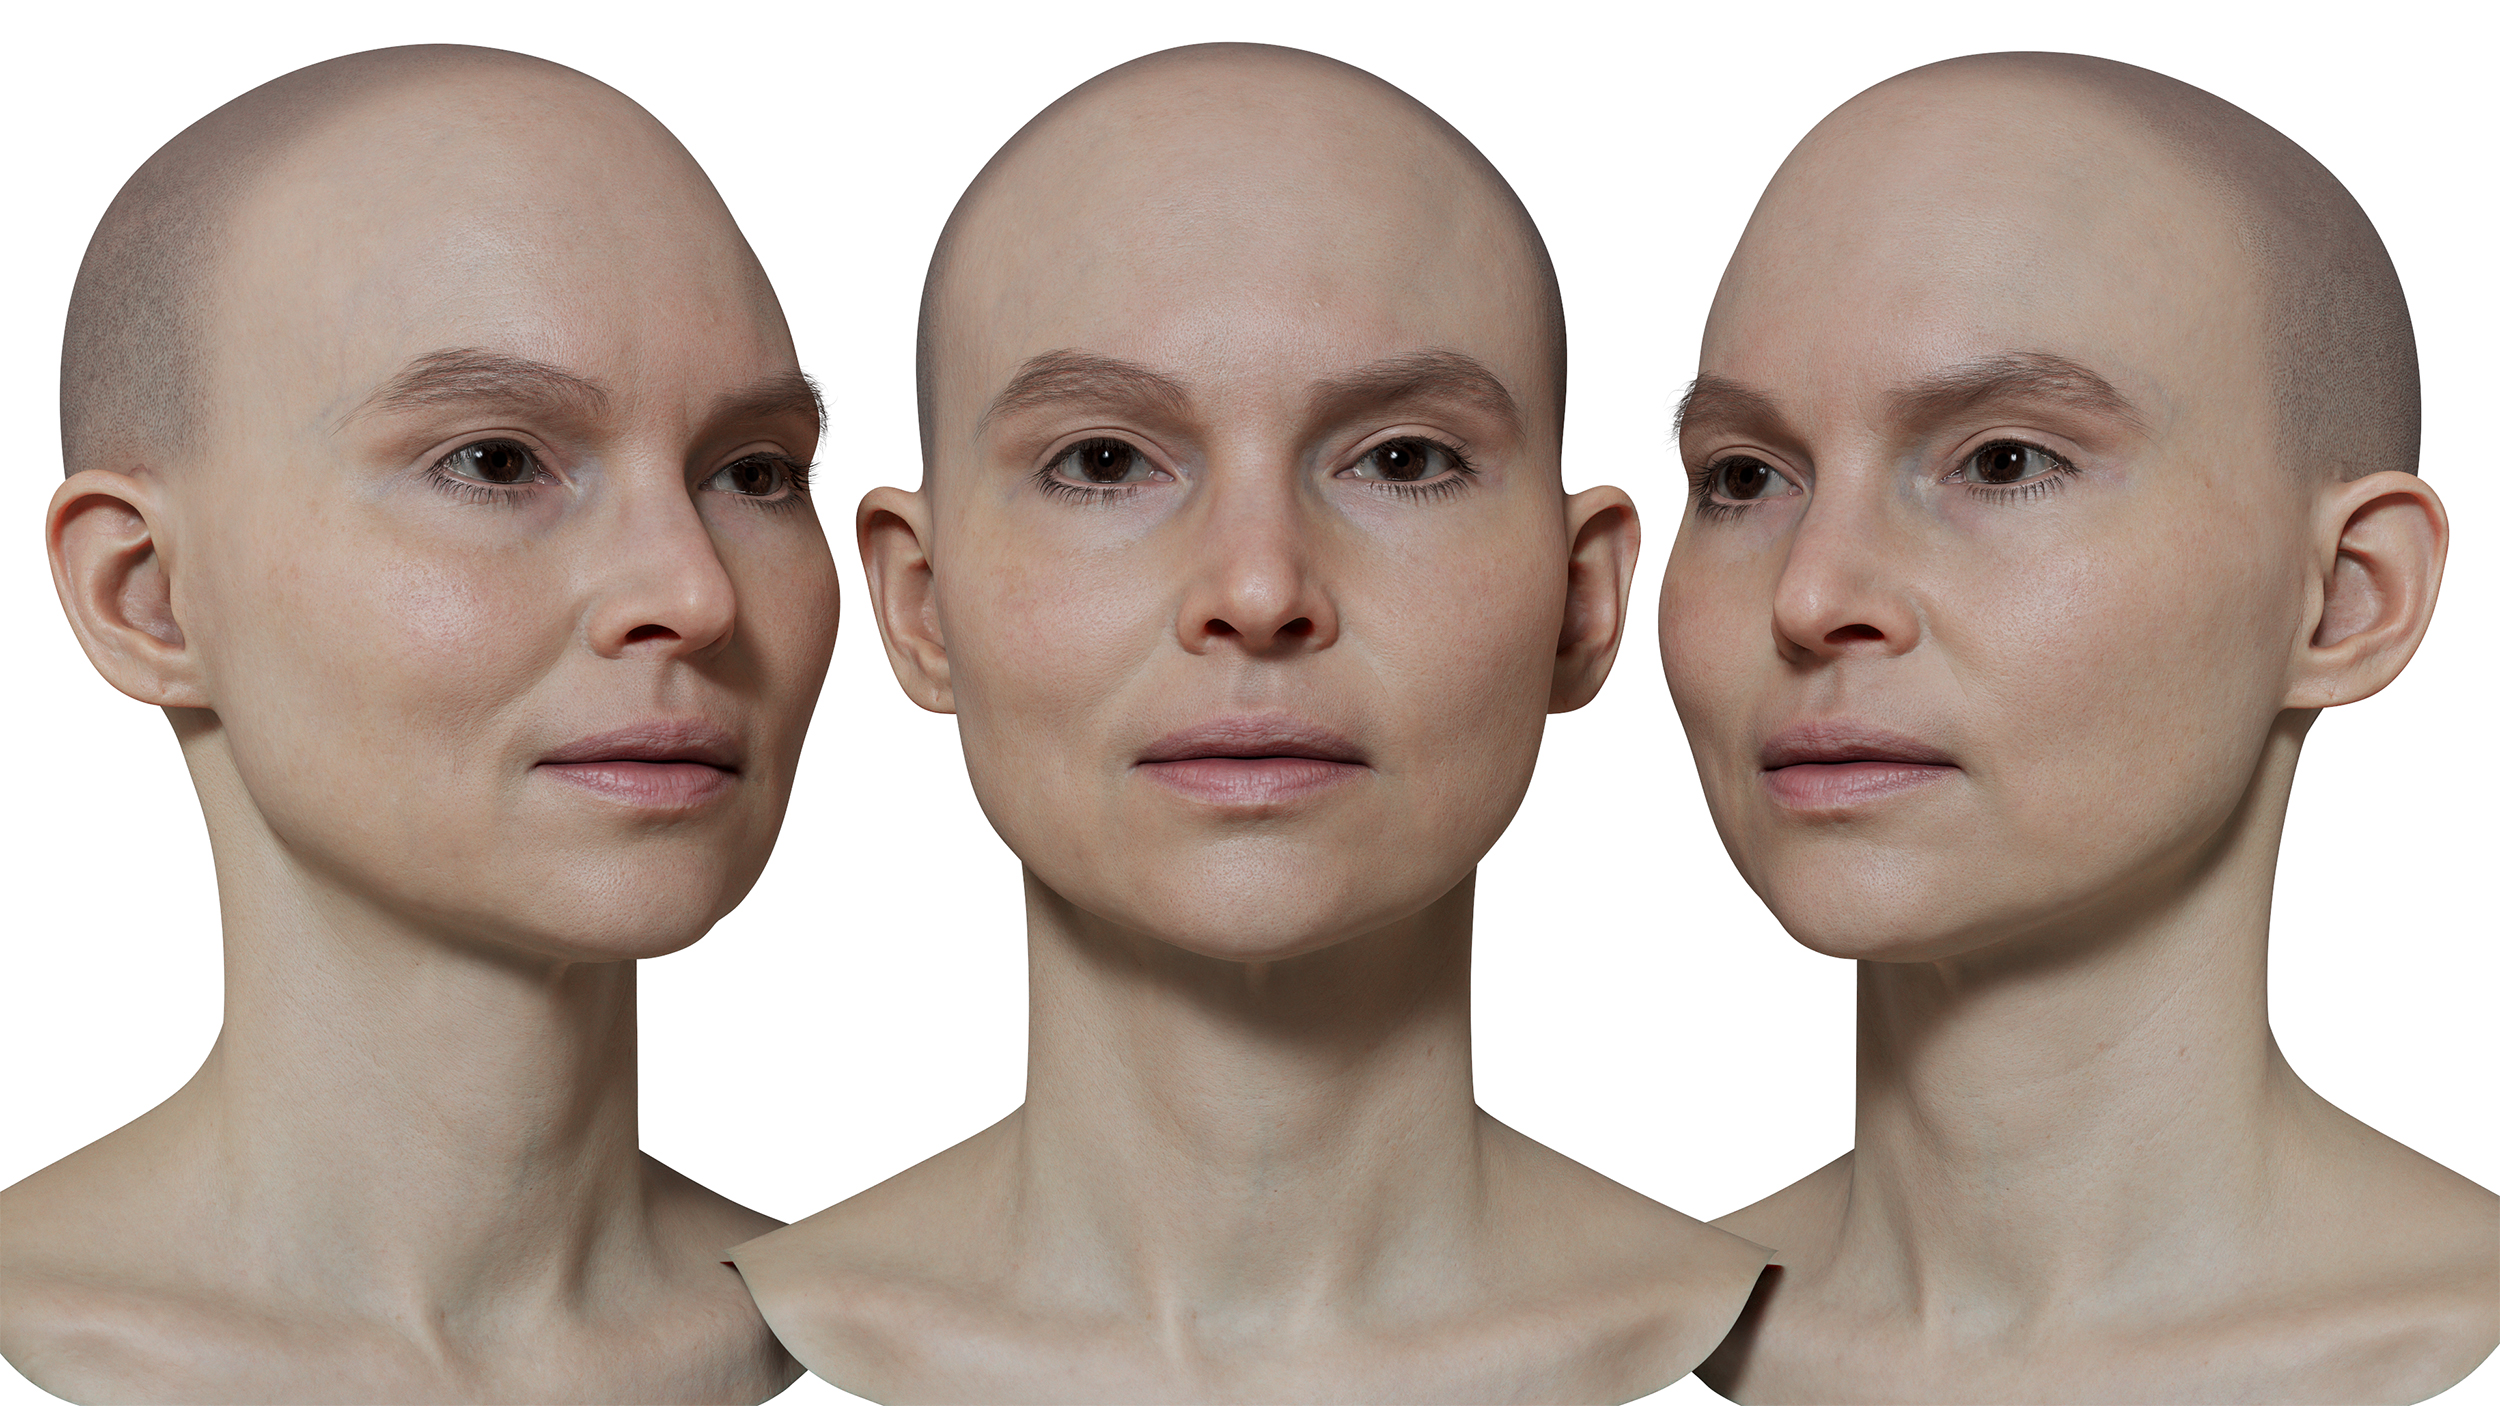 Download female 3d head model scan